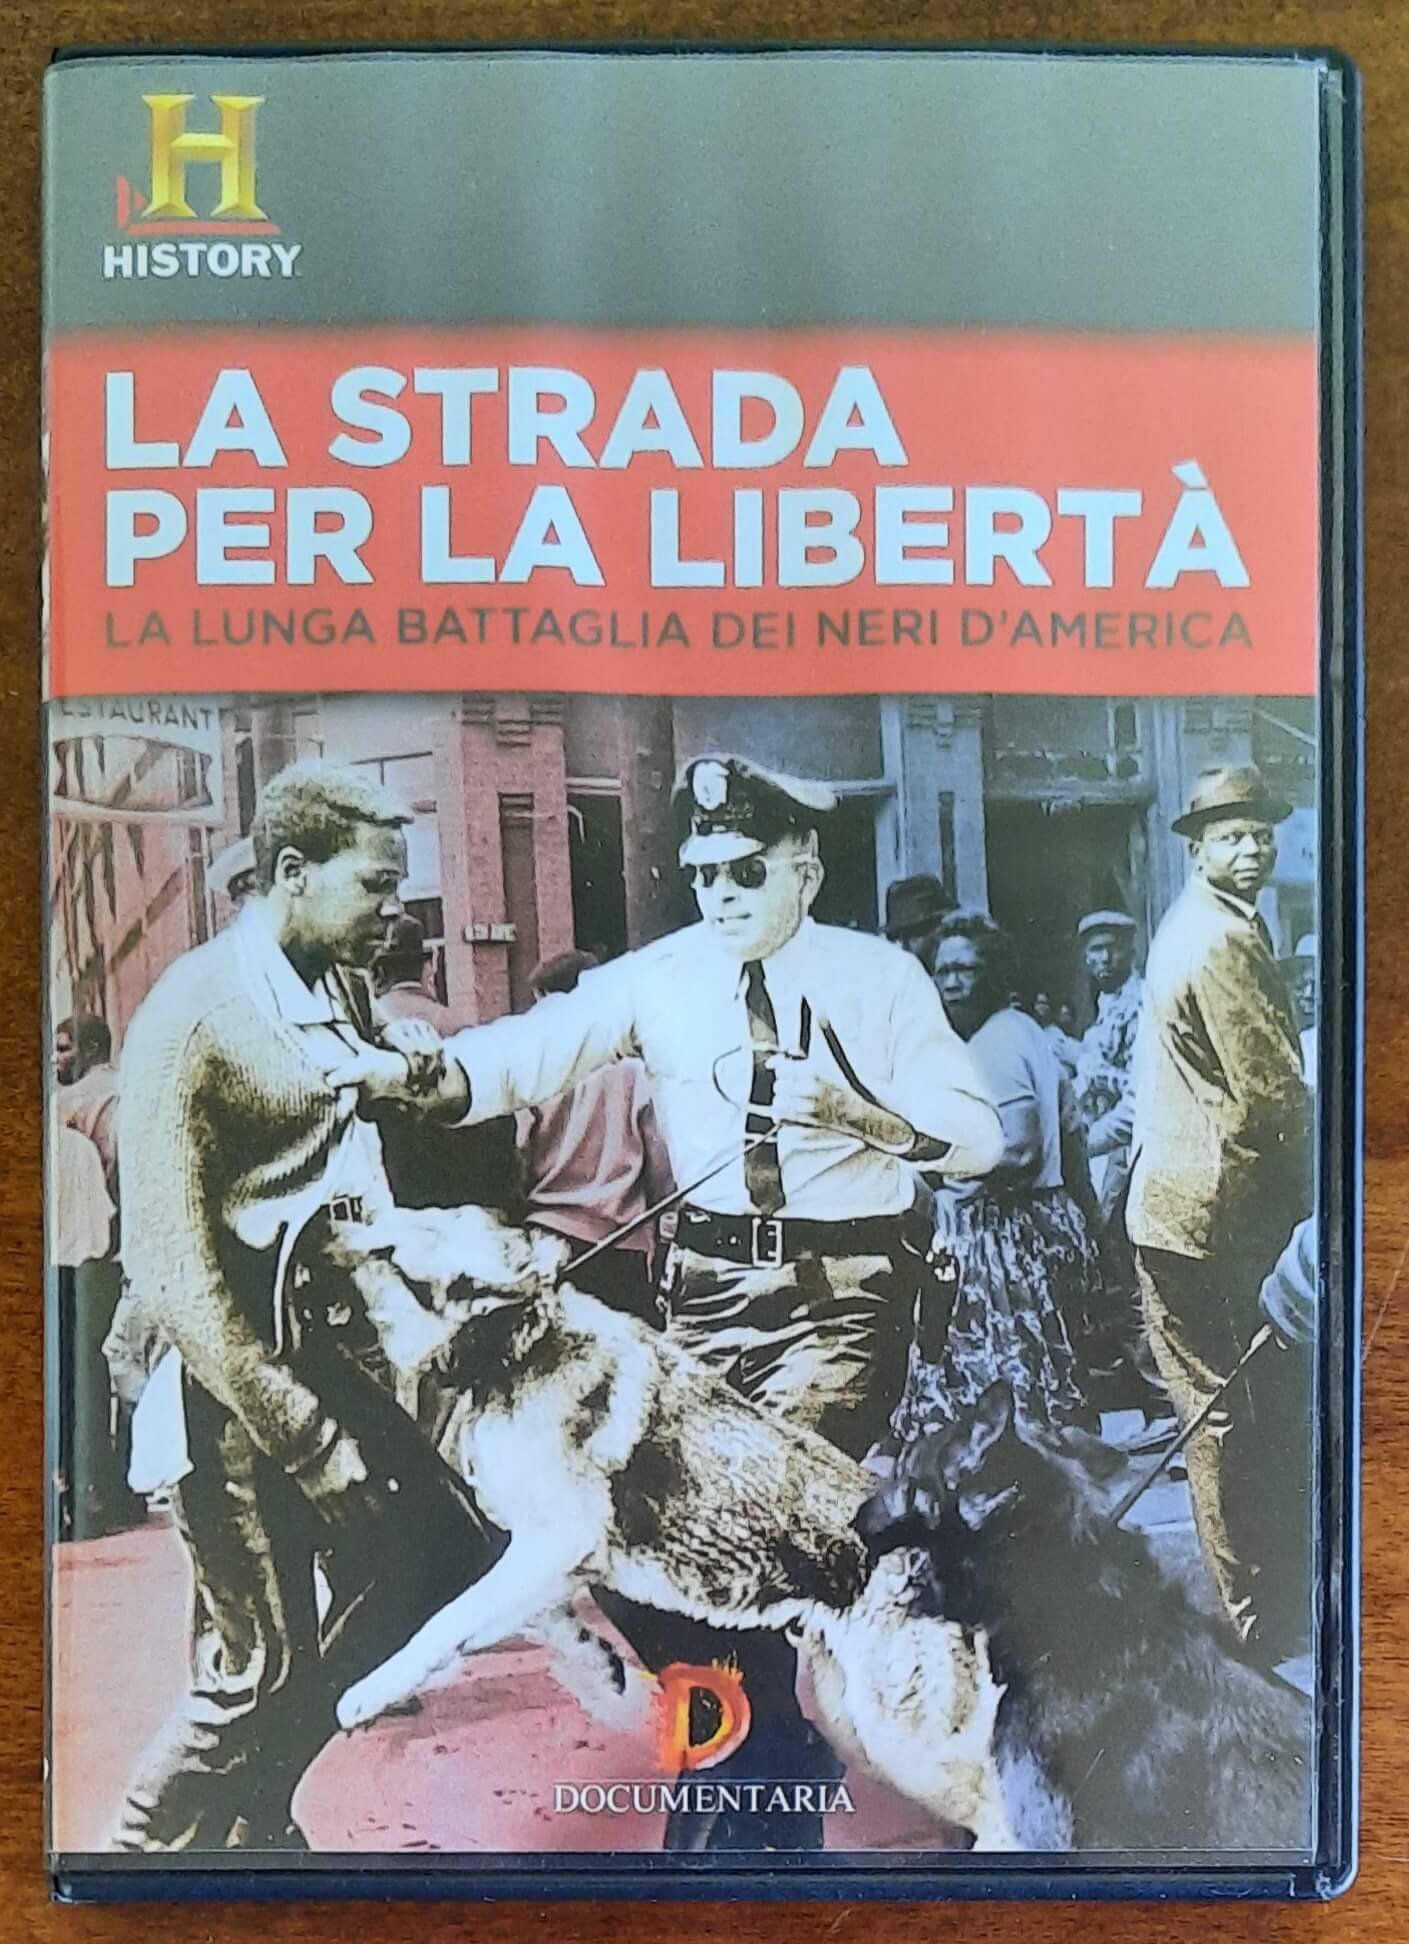 DVD: La strada per la libertà. La lunga battaglia dei neri d'America